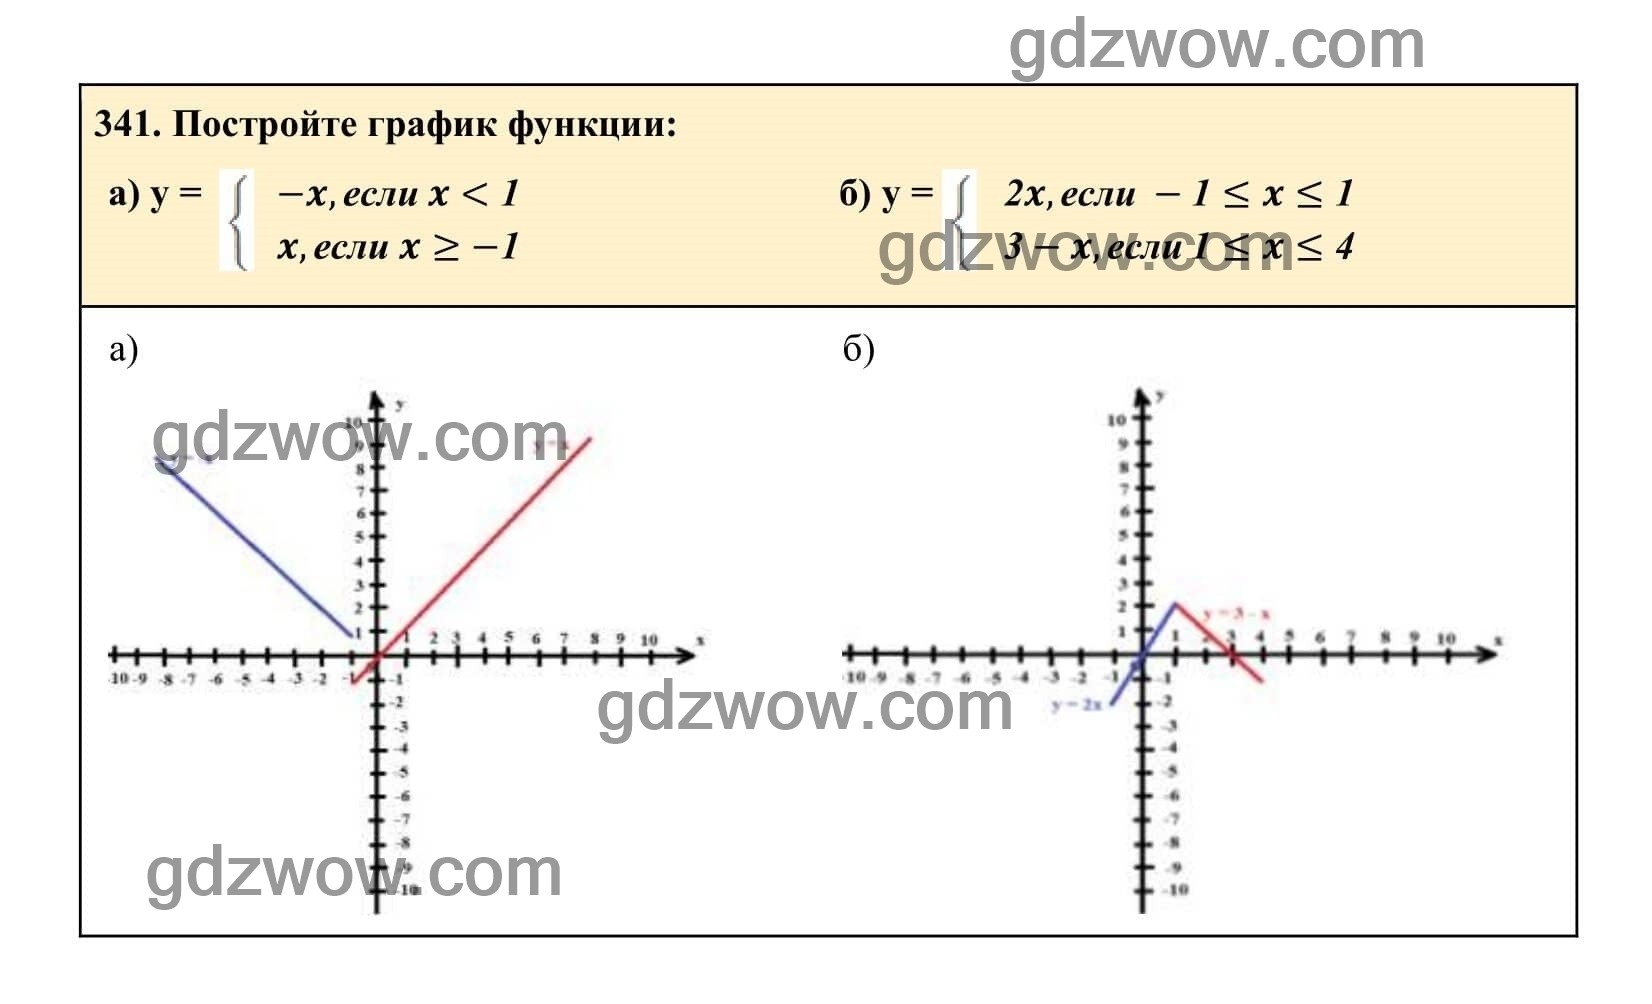 Упражнение 341 - ГДЗ по Алгебре 7 класс Учебник Макарычев (решебник) - GDZwow